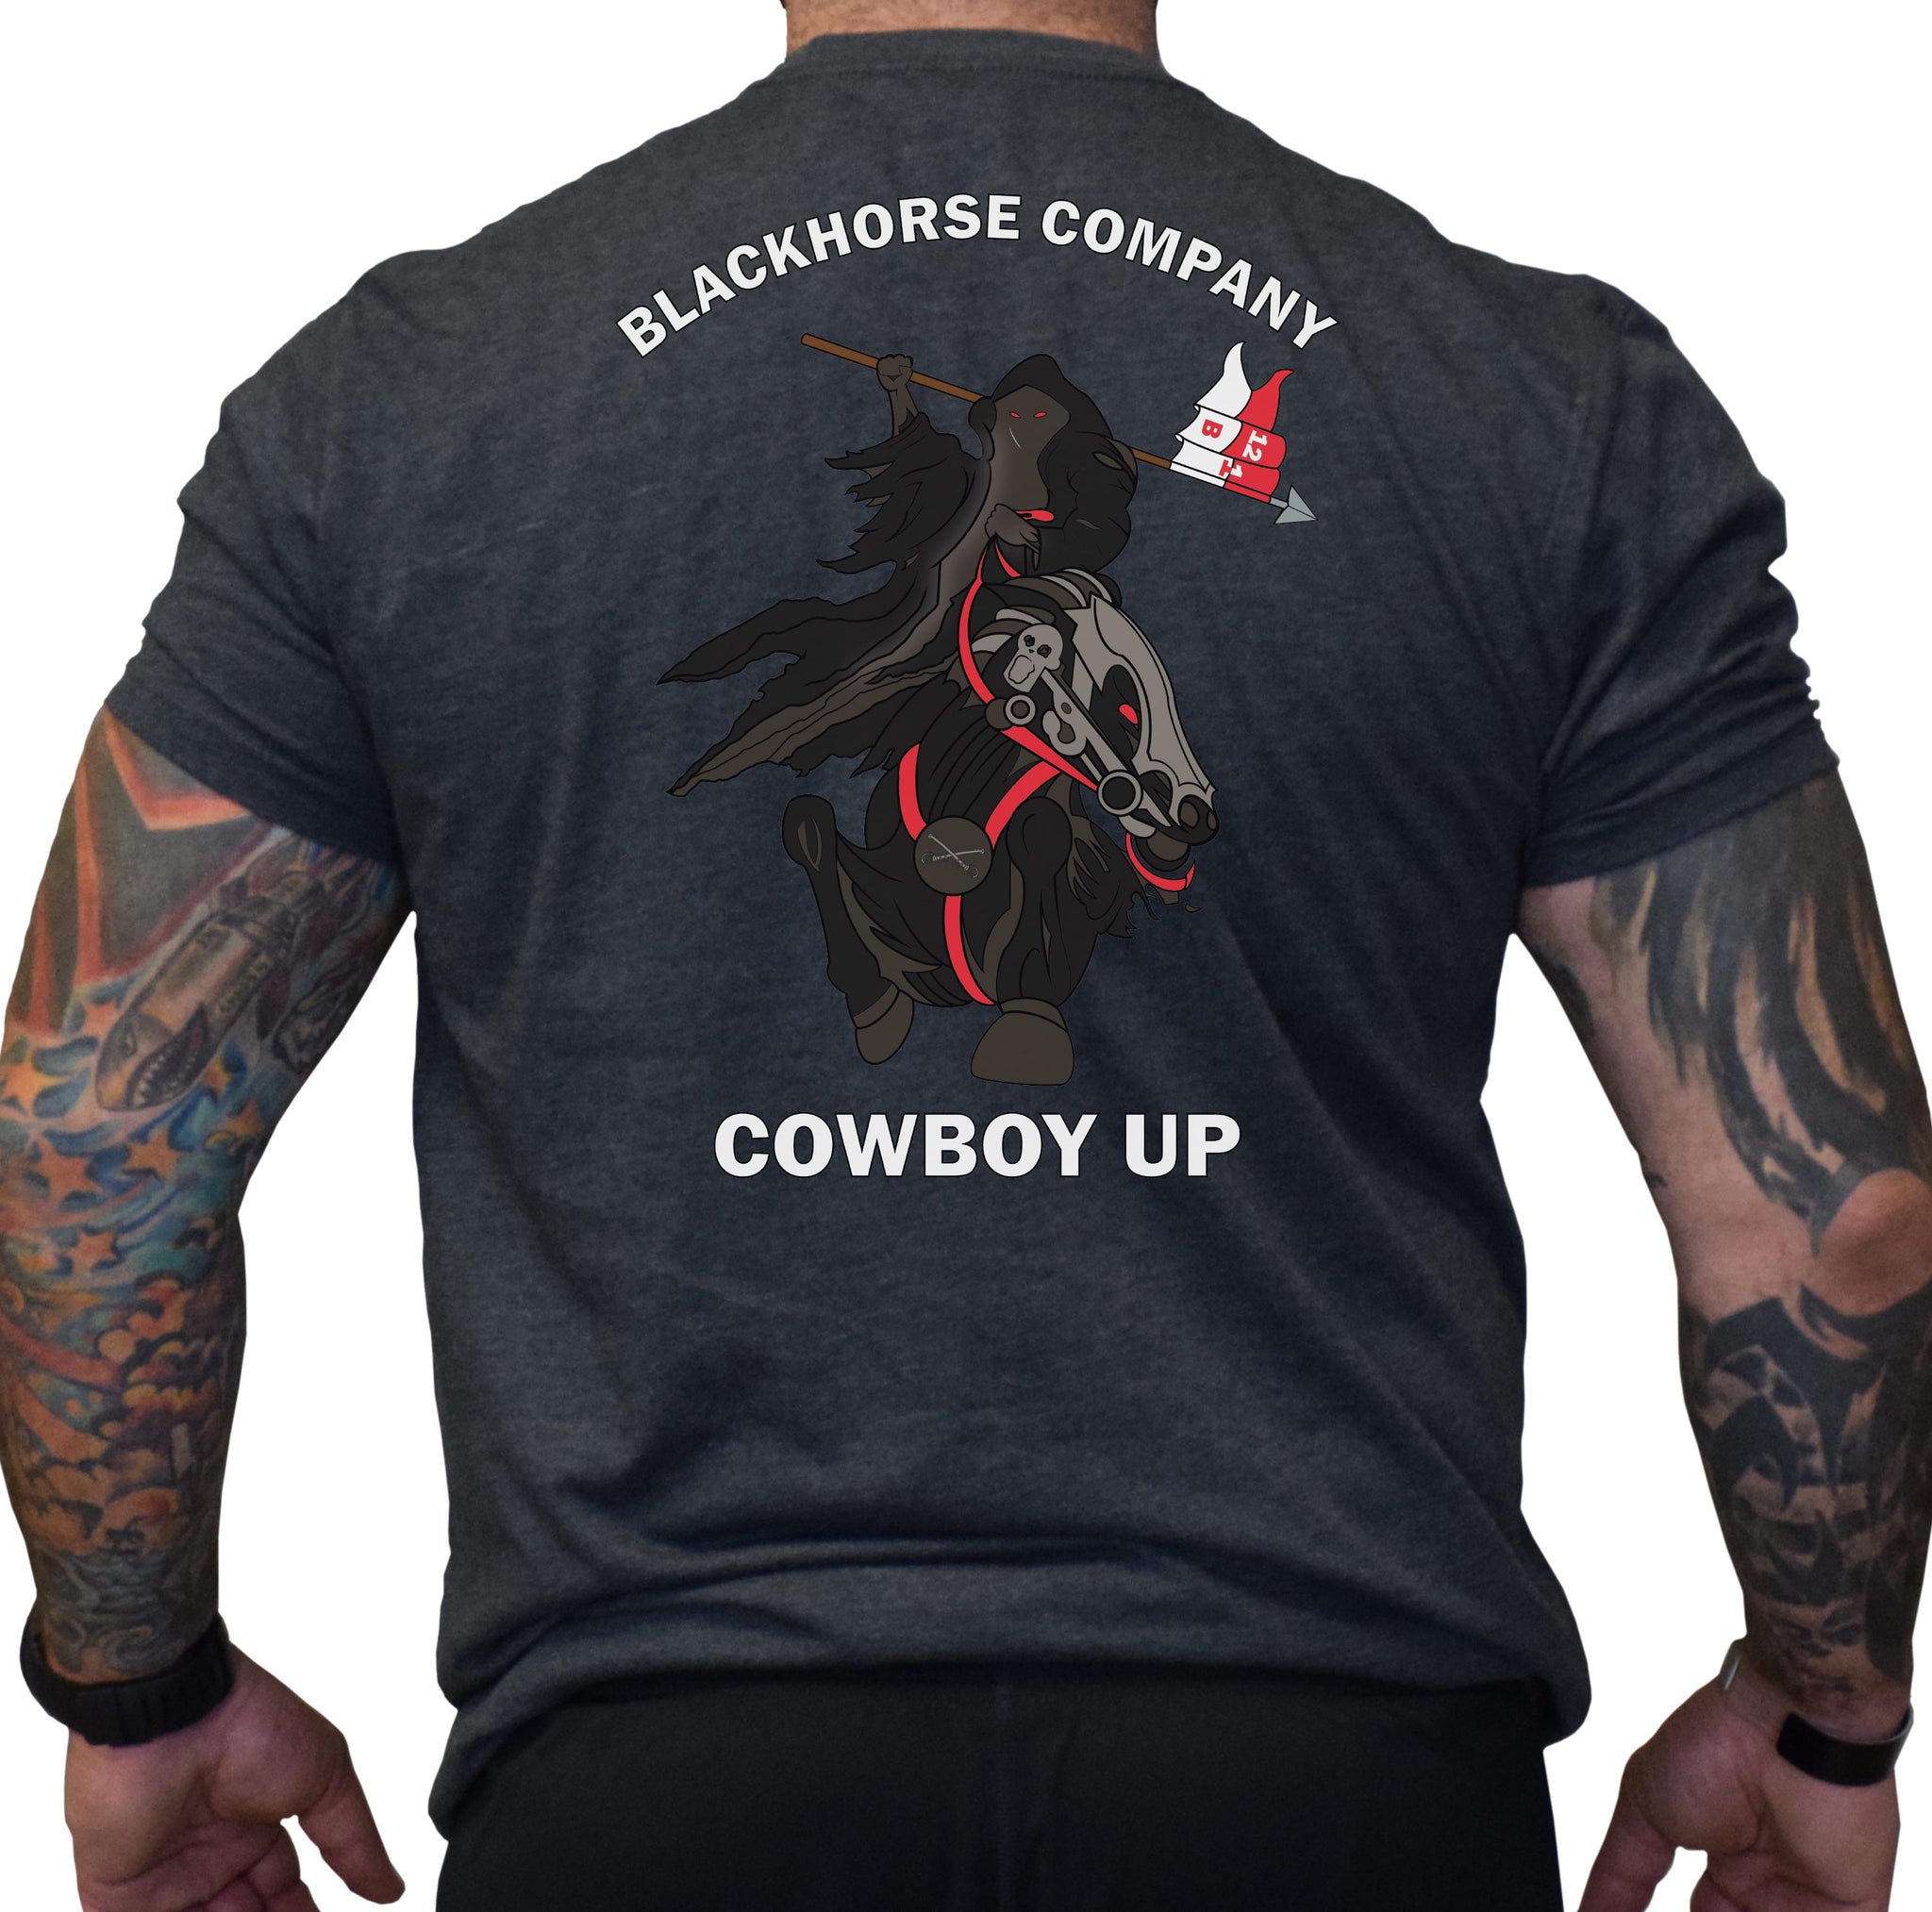 Blackhorse Company Shirt